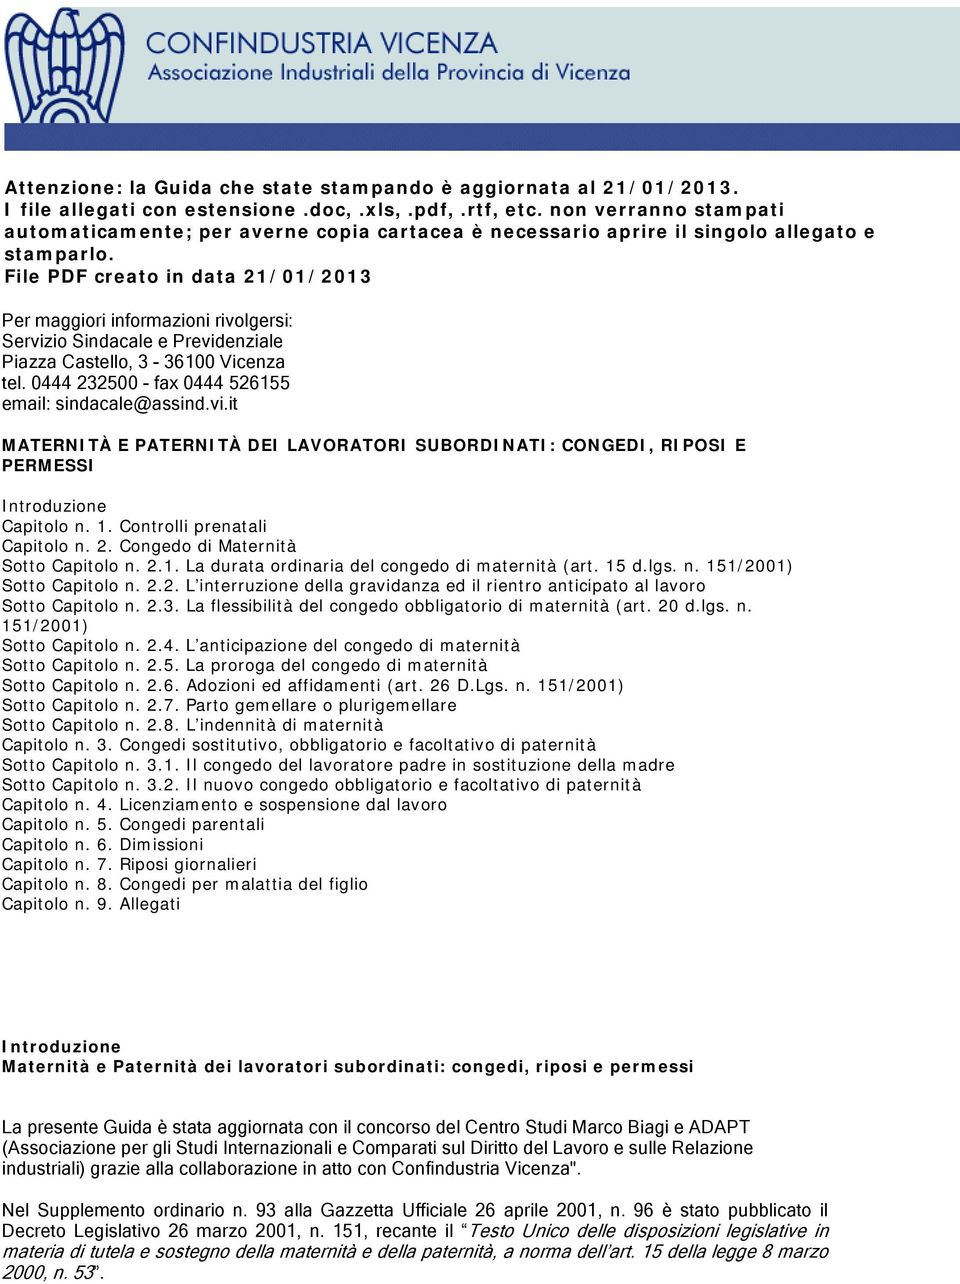 File PDF creato in data 21/01/2013 Per maggiori informazioni rivolgersi: Servizio Sindacale e Previdenziale Piazza Castello, 3-36100 Vicenza tel. 0444 232500 - fax 0444 526155 email: sindacale@assind.